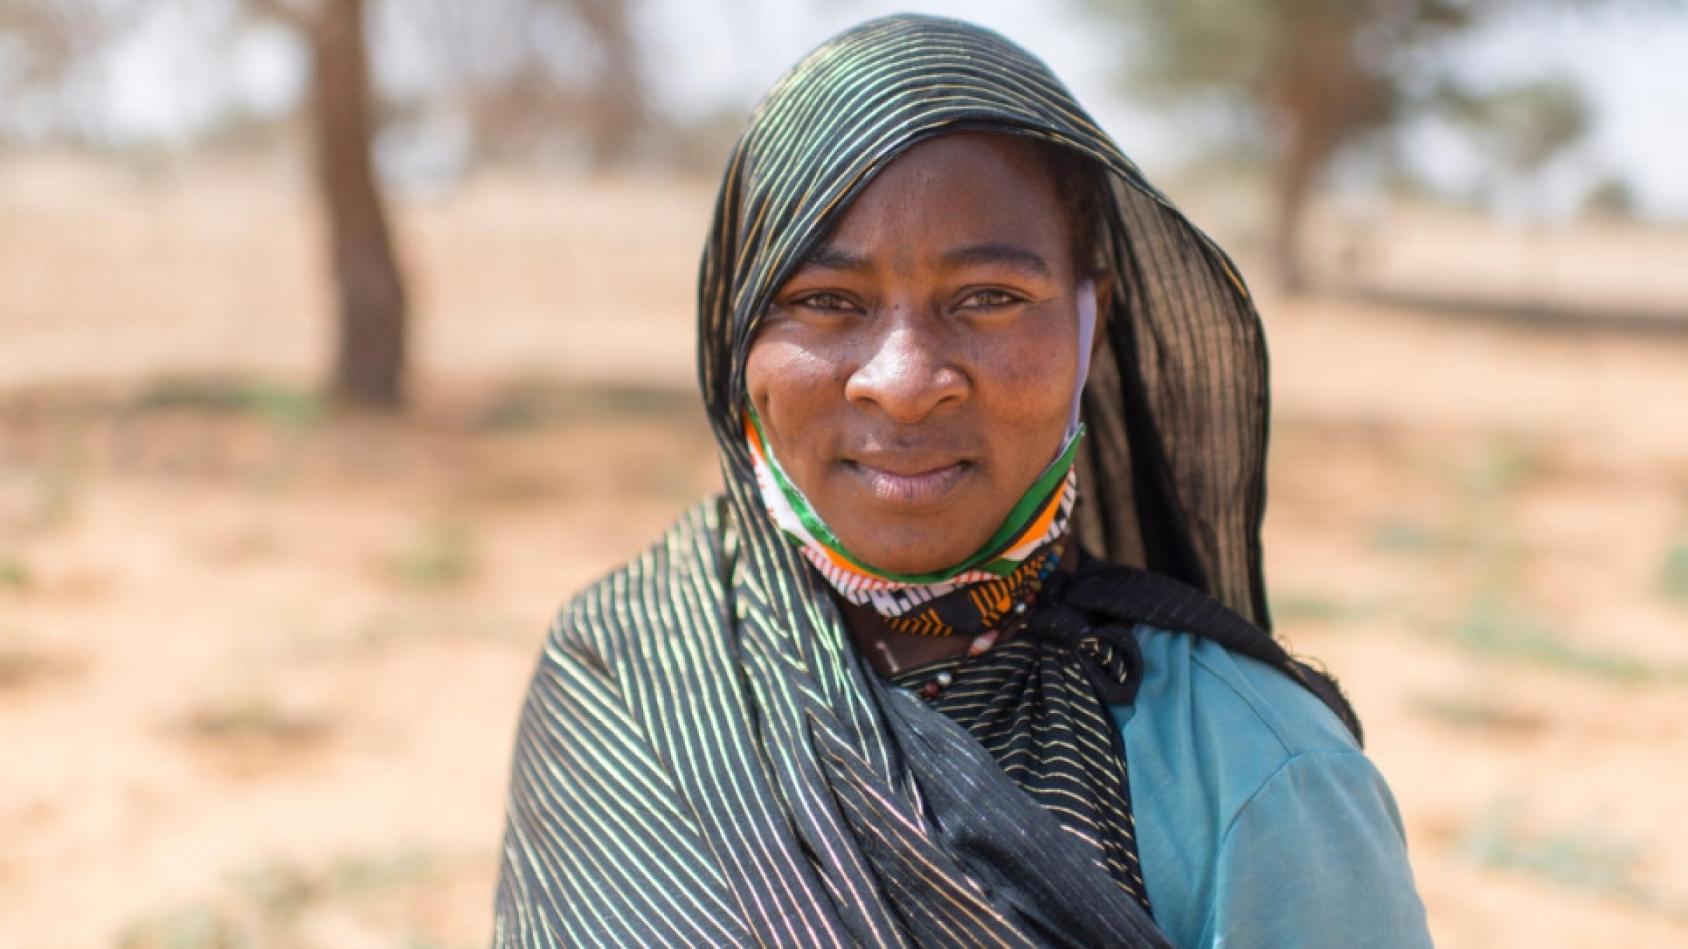 لقطة مقرّبة لامرأة من مالي ترتدي وشاحًا رمادي اللون على رأسها وكتفيها.